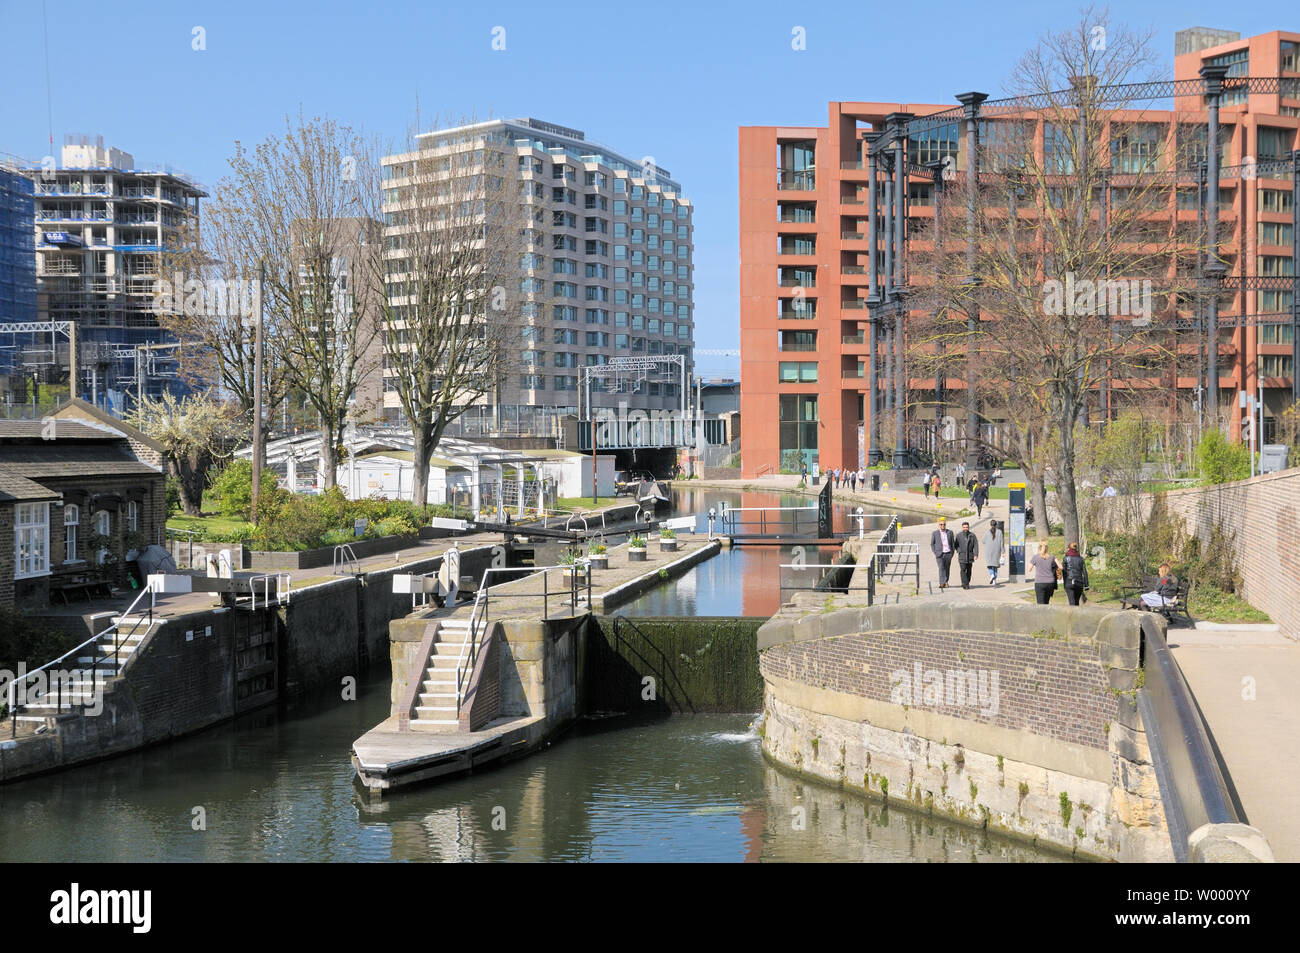 Blocage de St Pancras et Gasholder Park, Regent's Canal, King's Cross, Londres, Angleterre, Royaume-Uni Banque D'Images